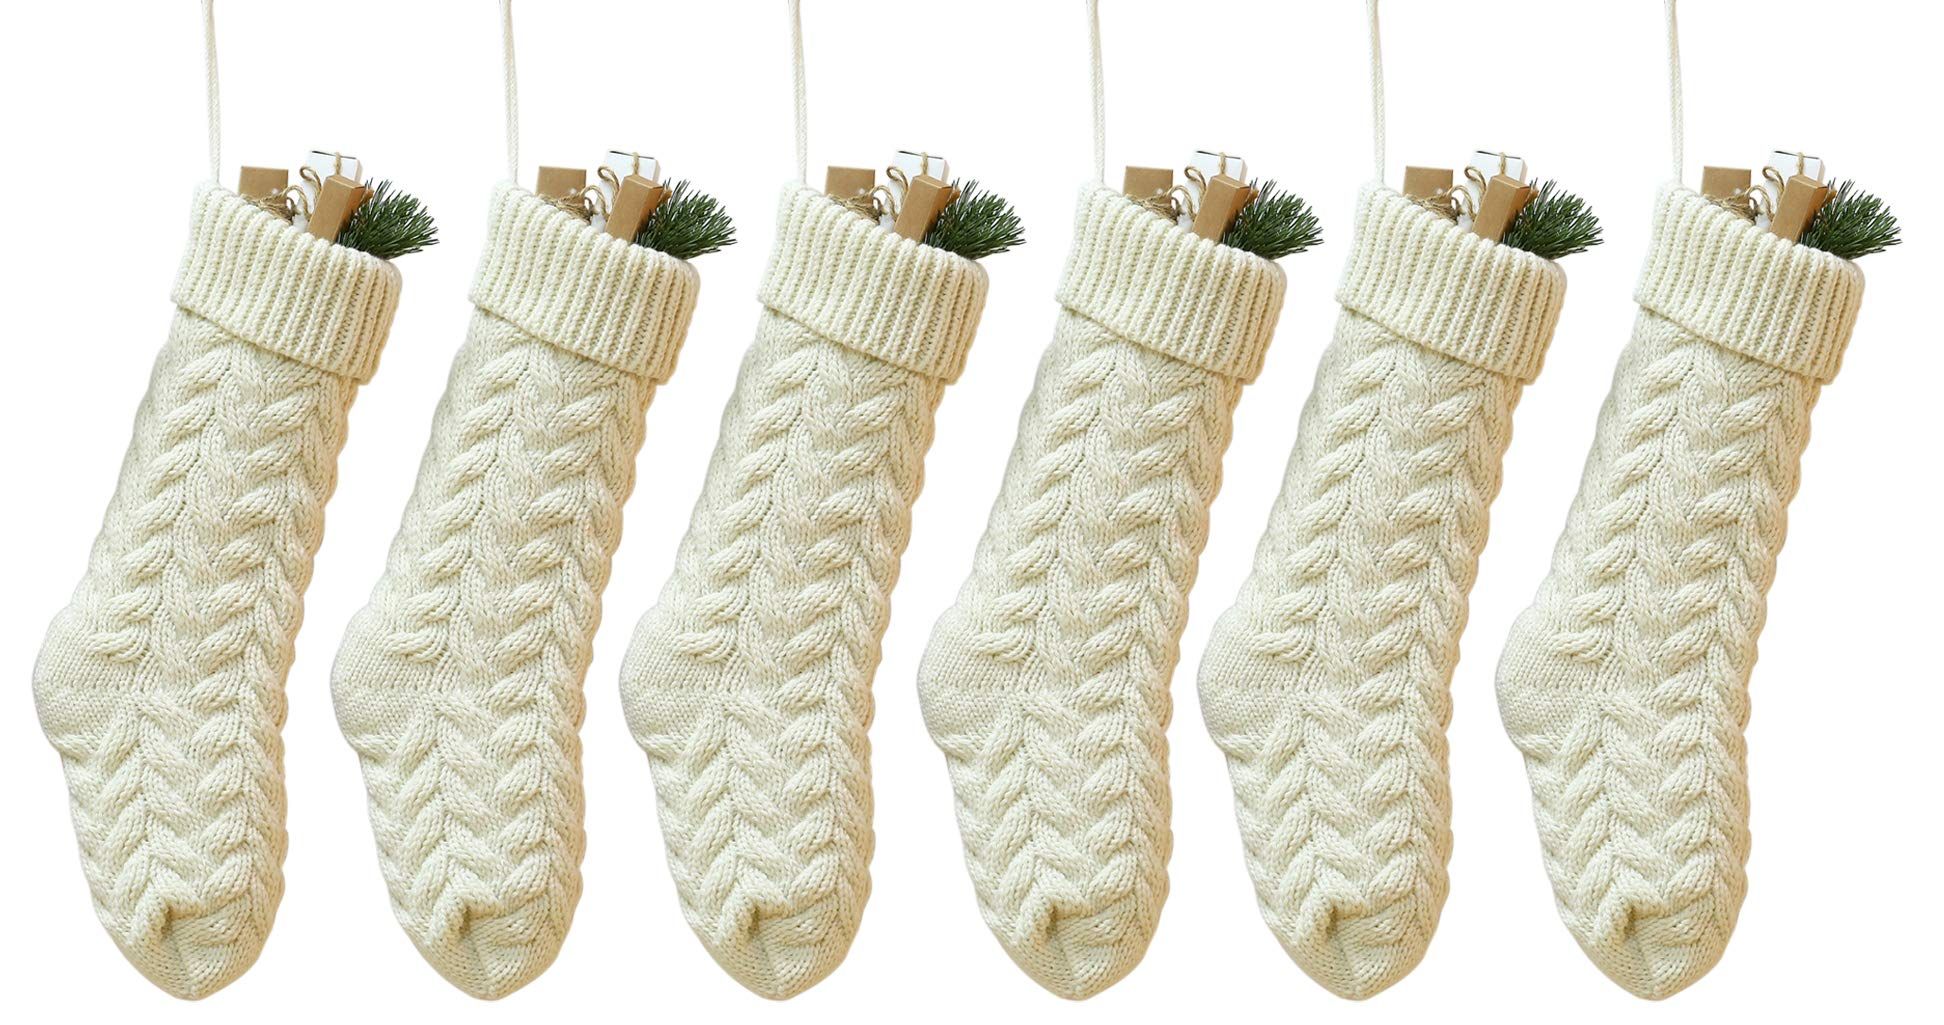 Kunyida Pack 6,18" Unique Ivory White Knit Christmas Stockings Style3 | Amazon (US)